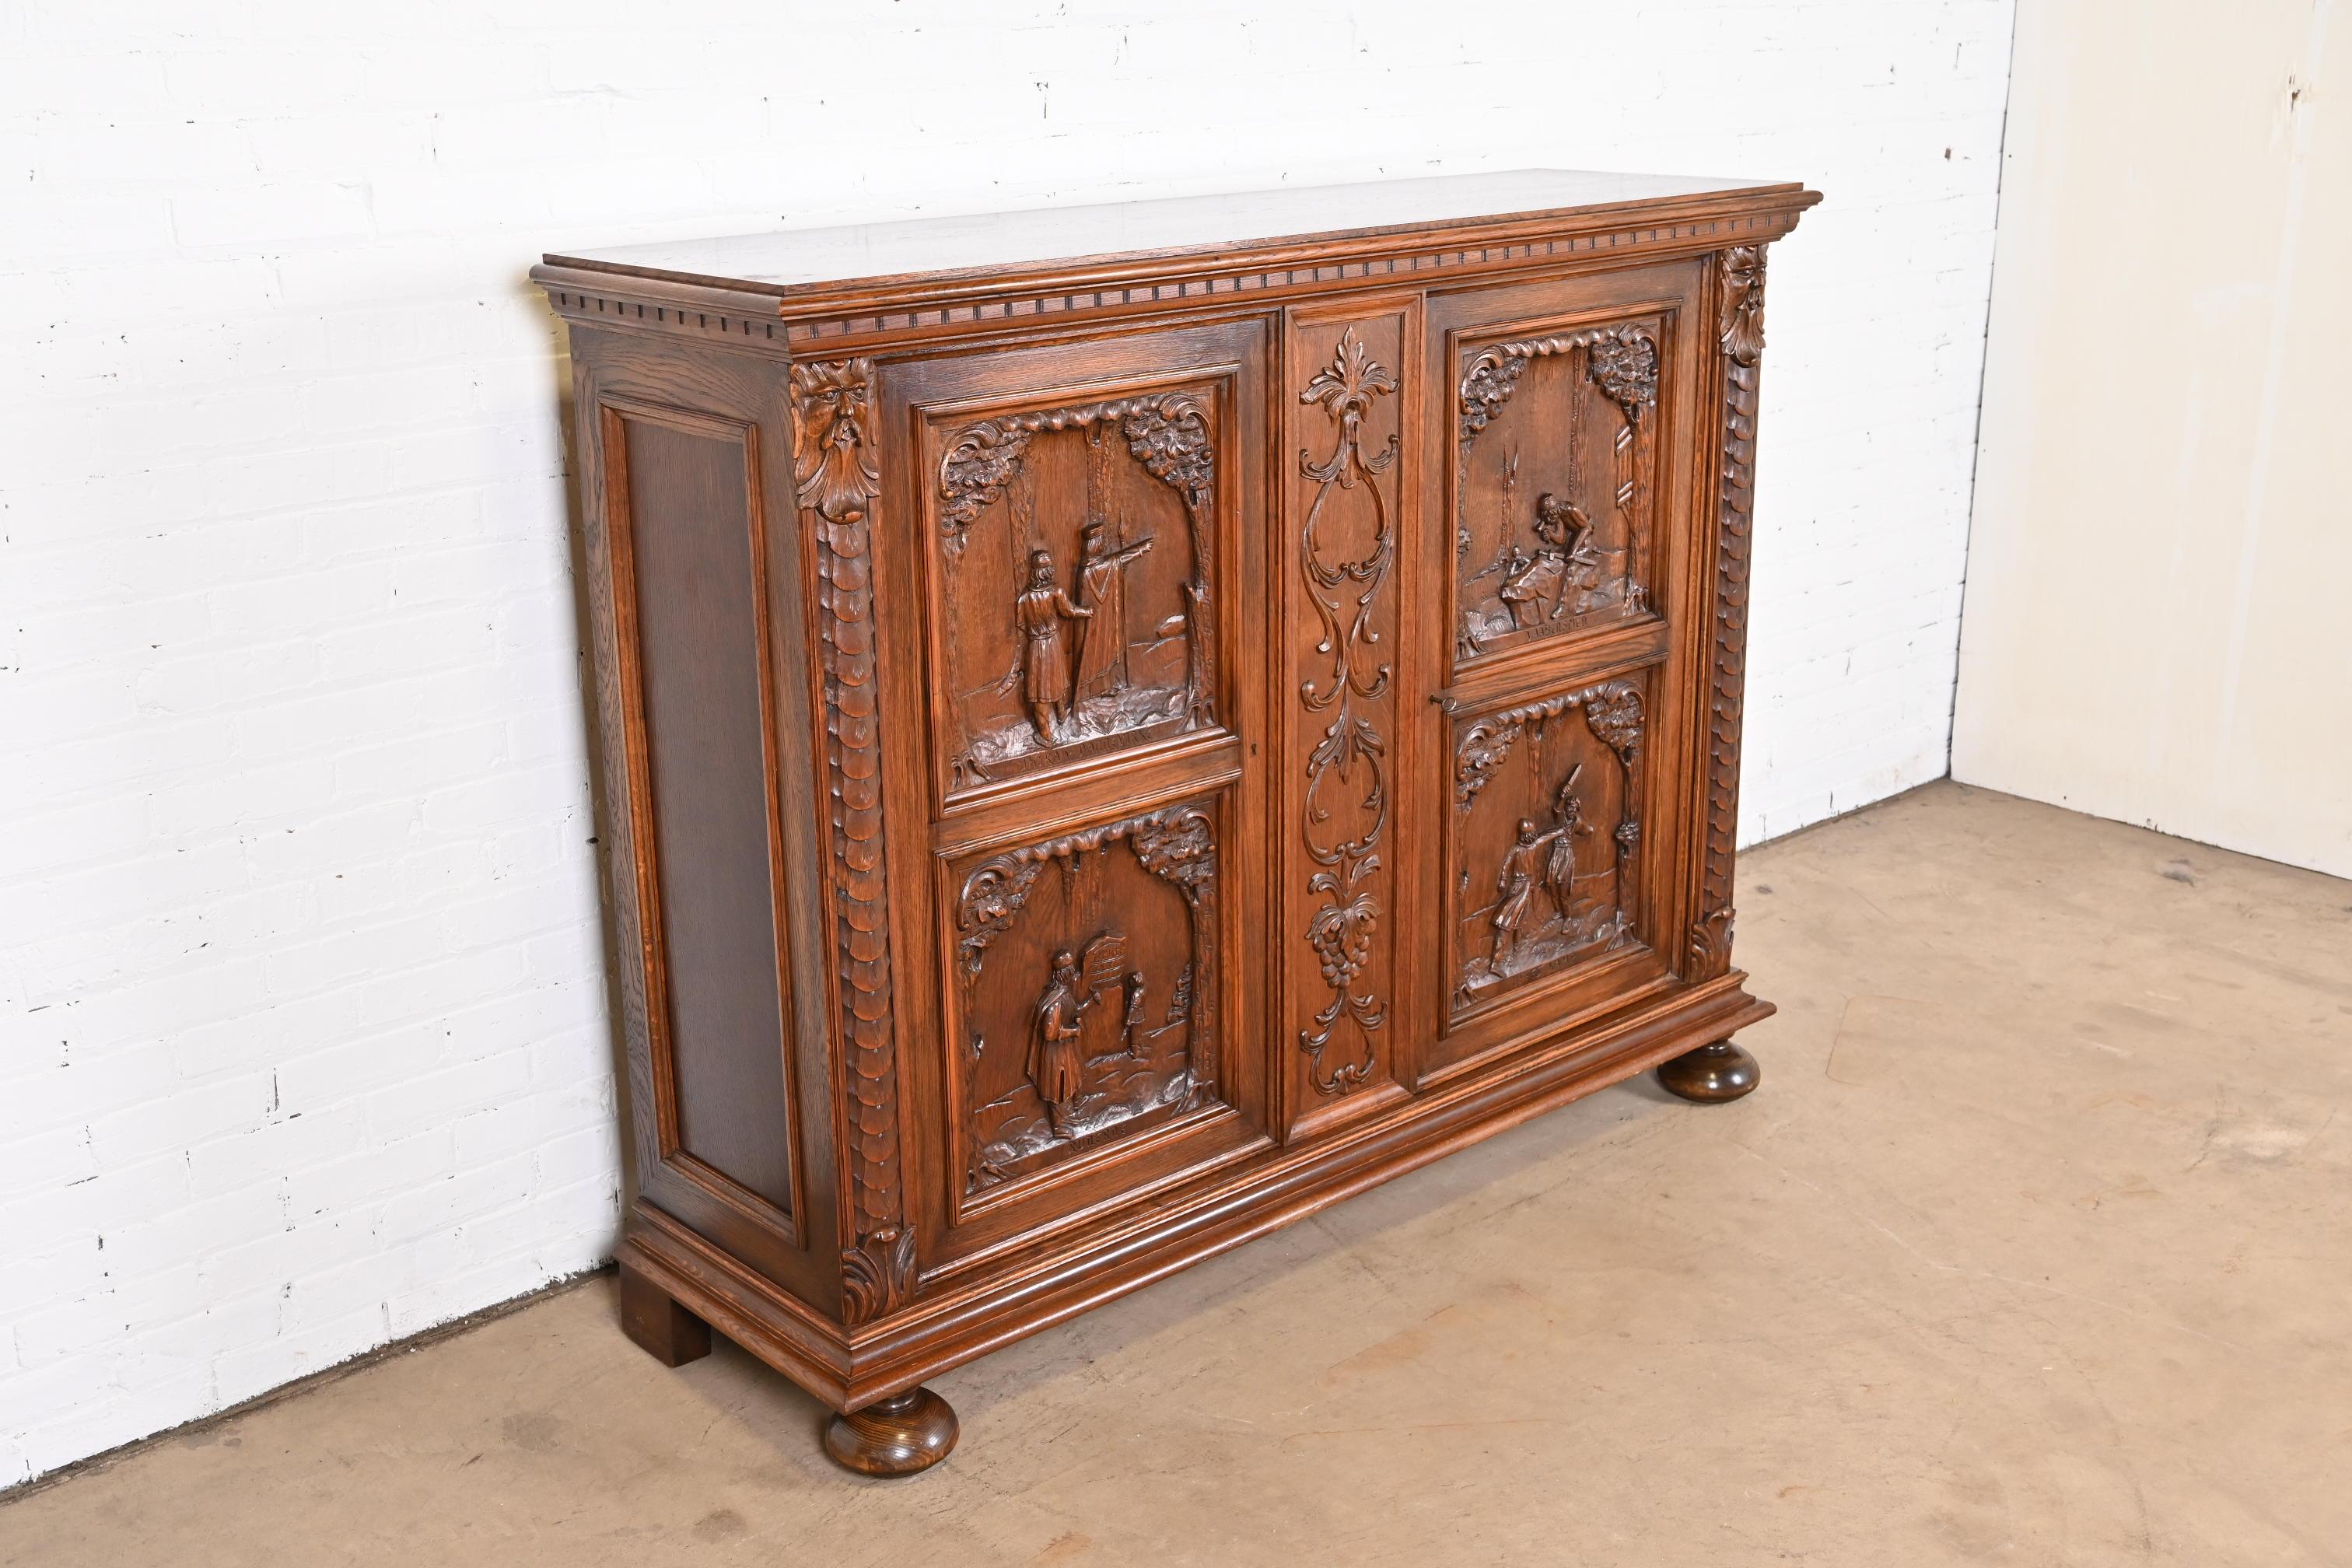 Antique Danish Renaissance Revival Ornate Carved Oak Sideboard or Bar Cabinet 1